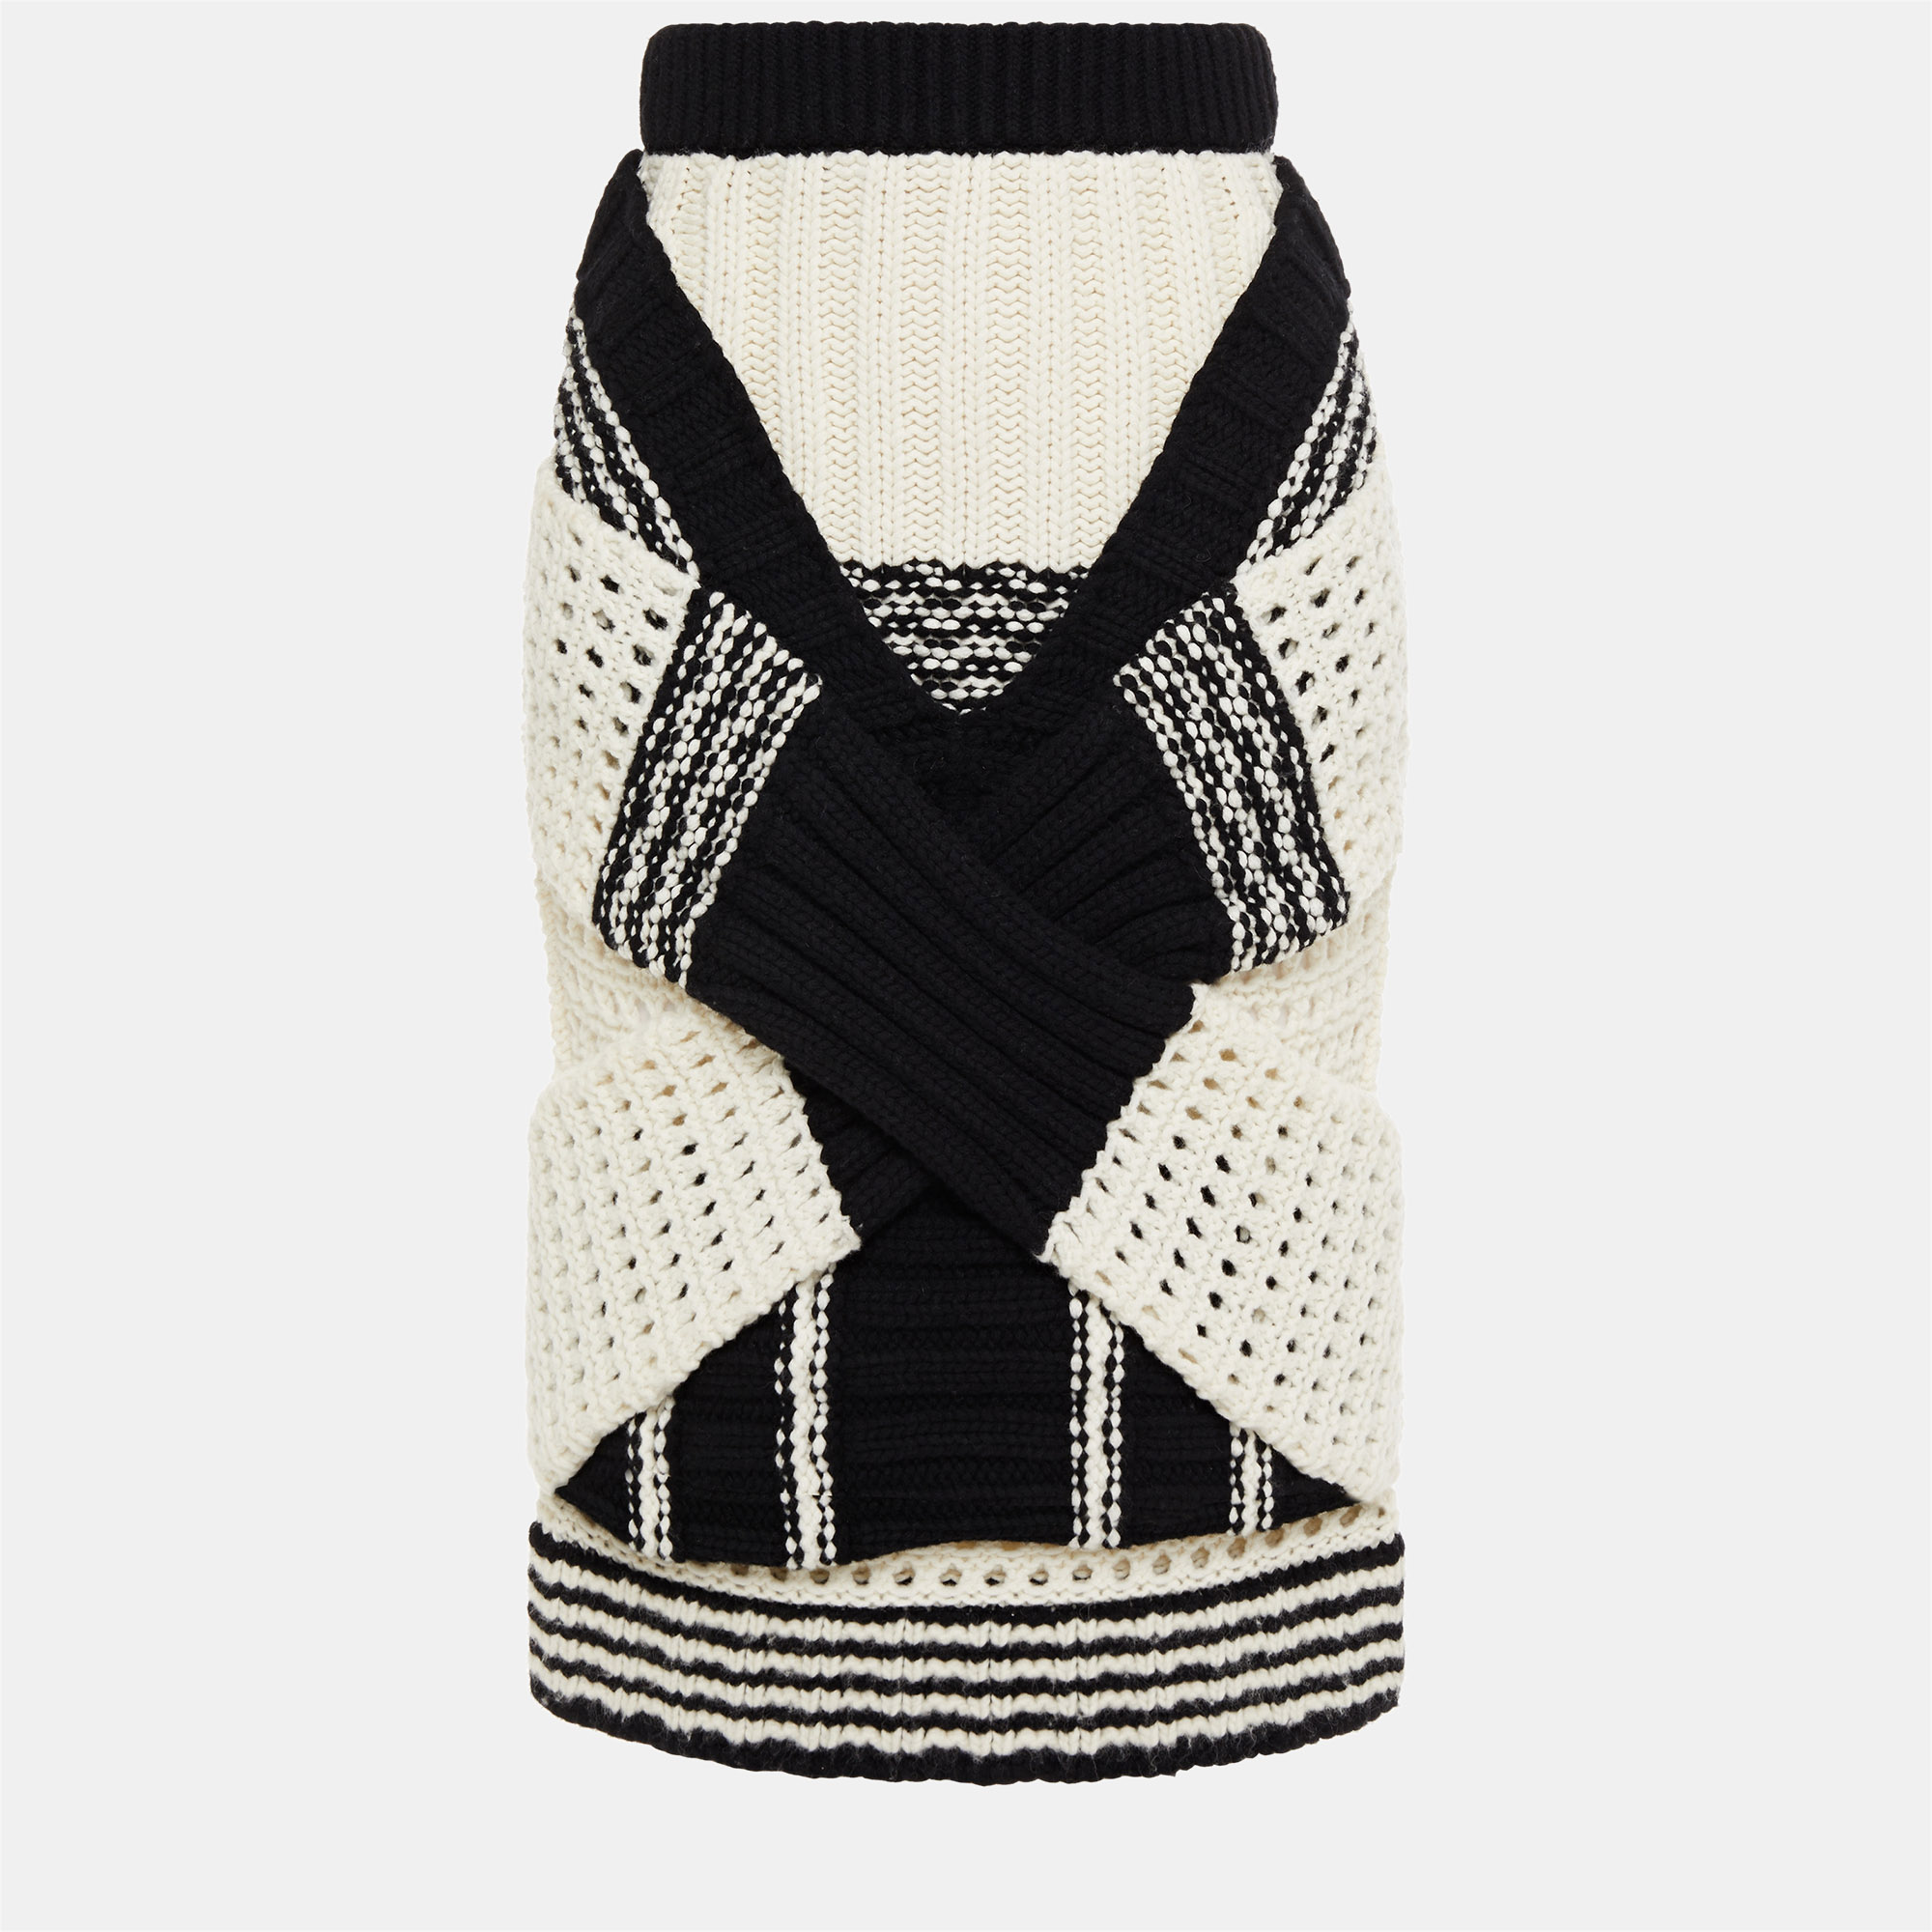 Burberry black/white knit knee length skirt size m